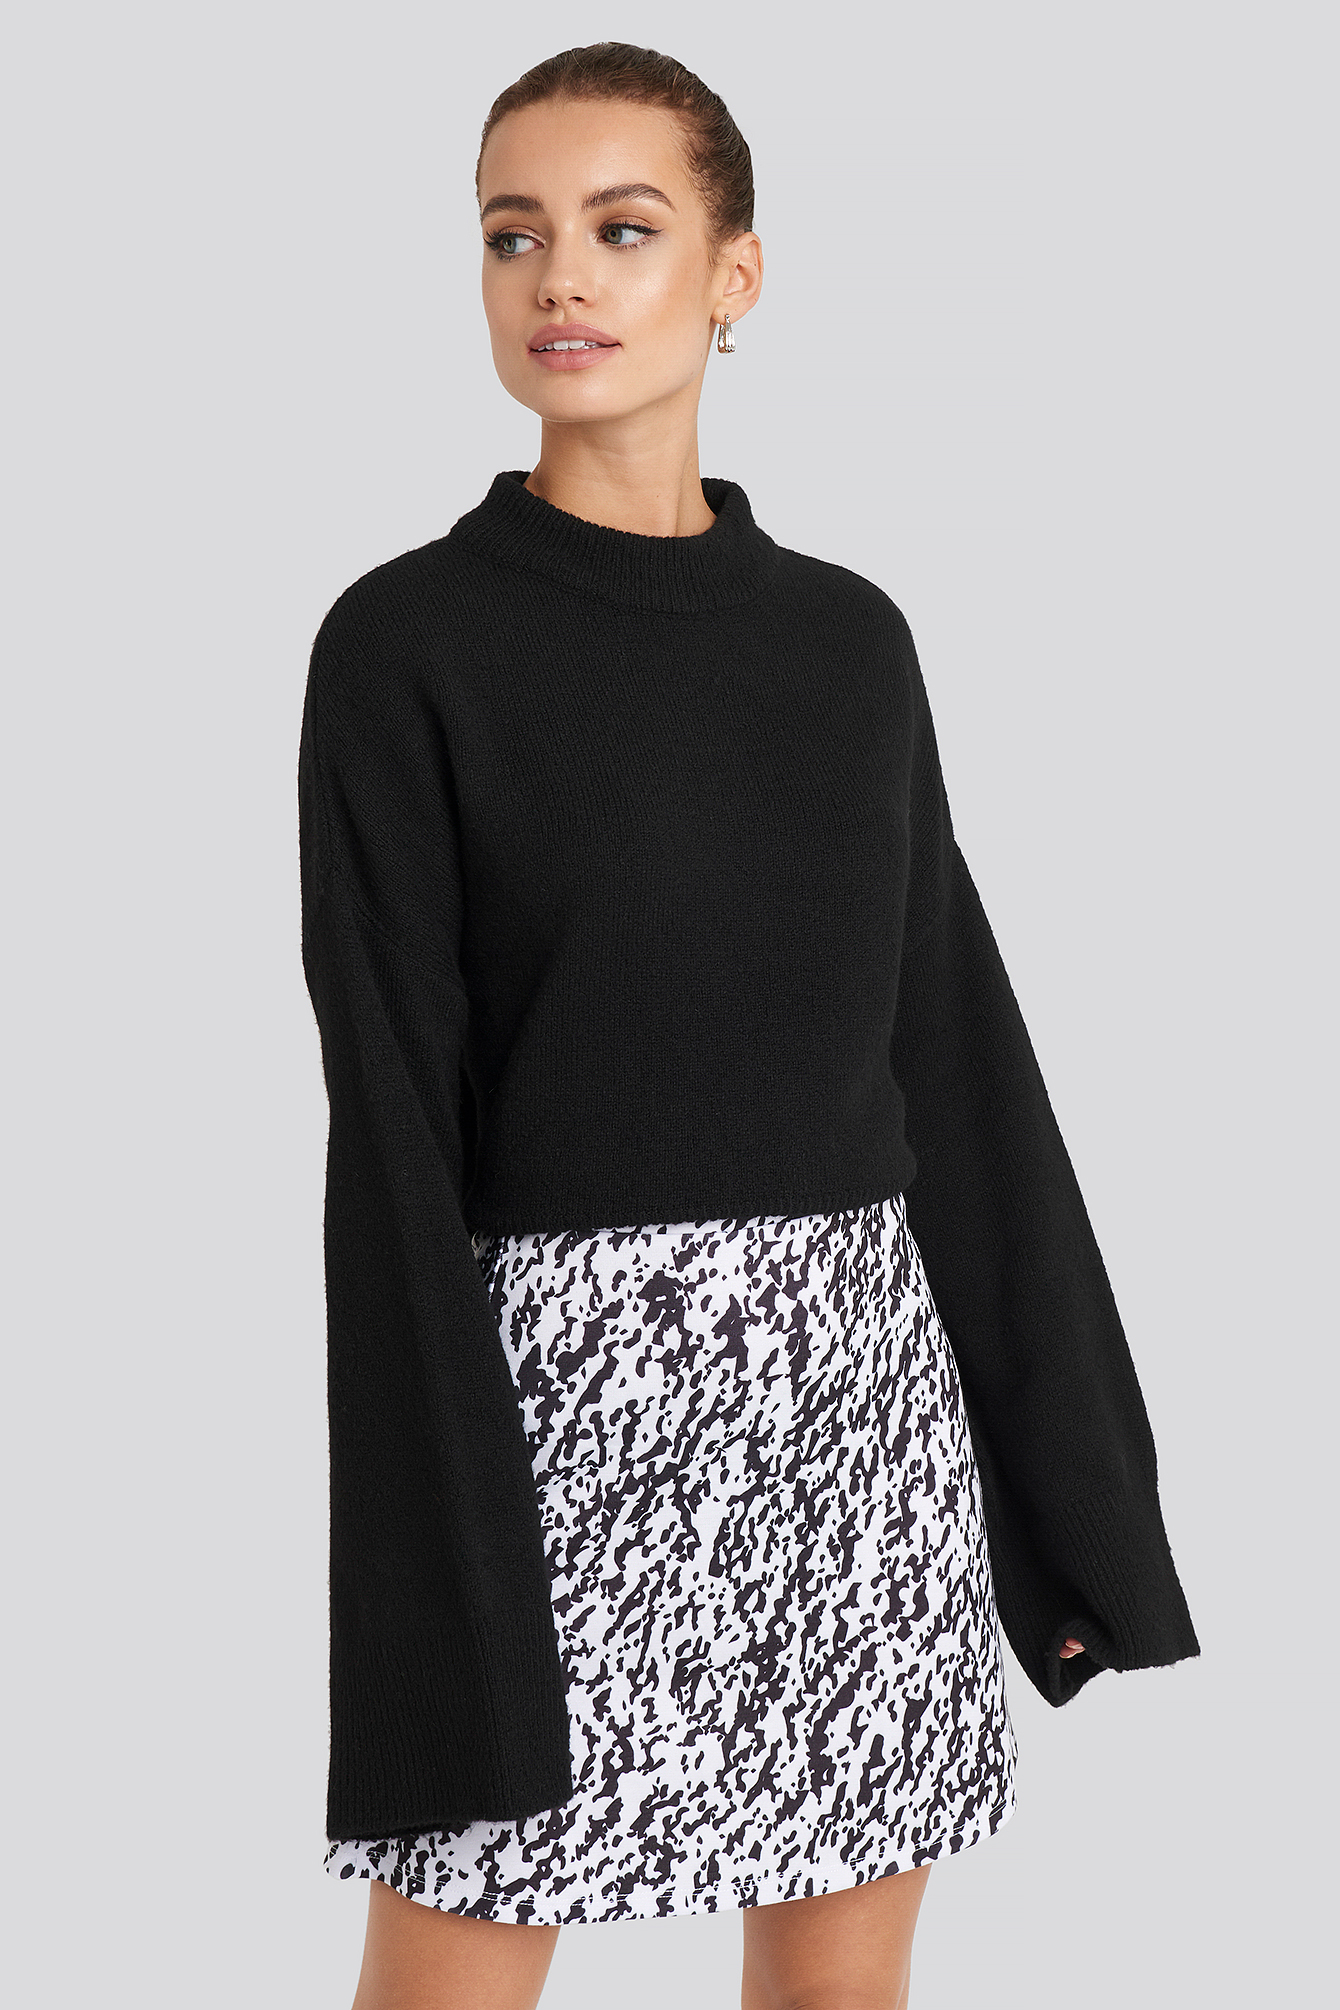 Leopard High Waist A-Line Skirt